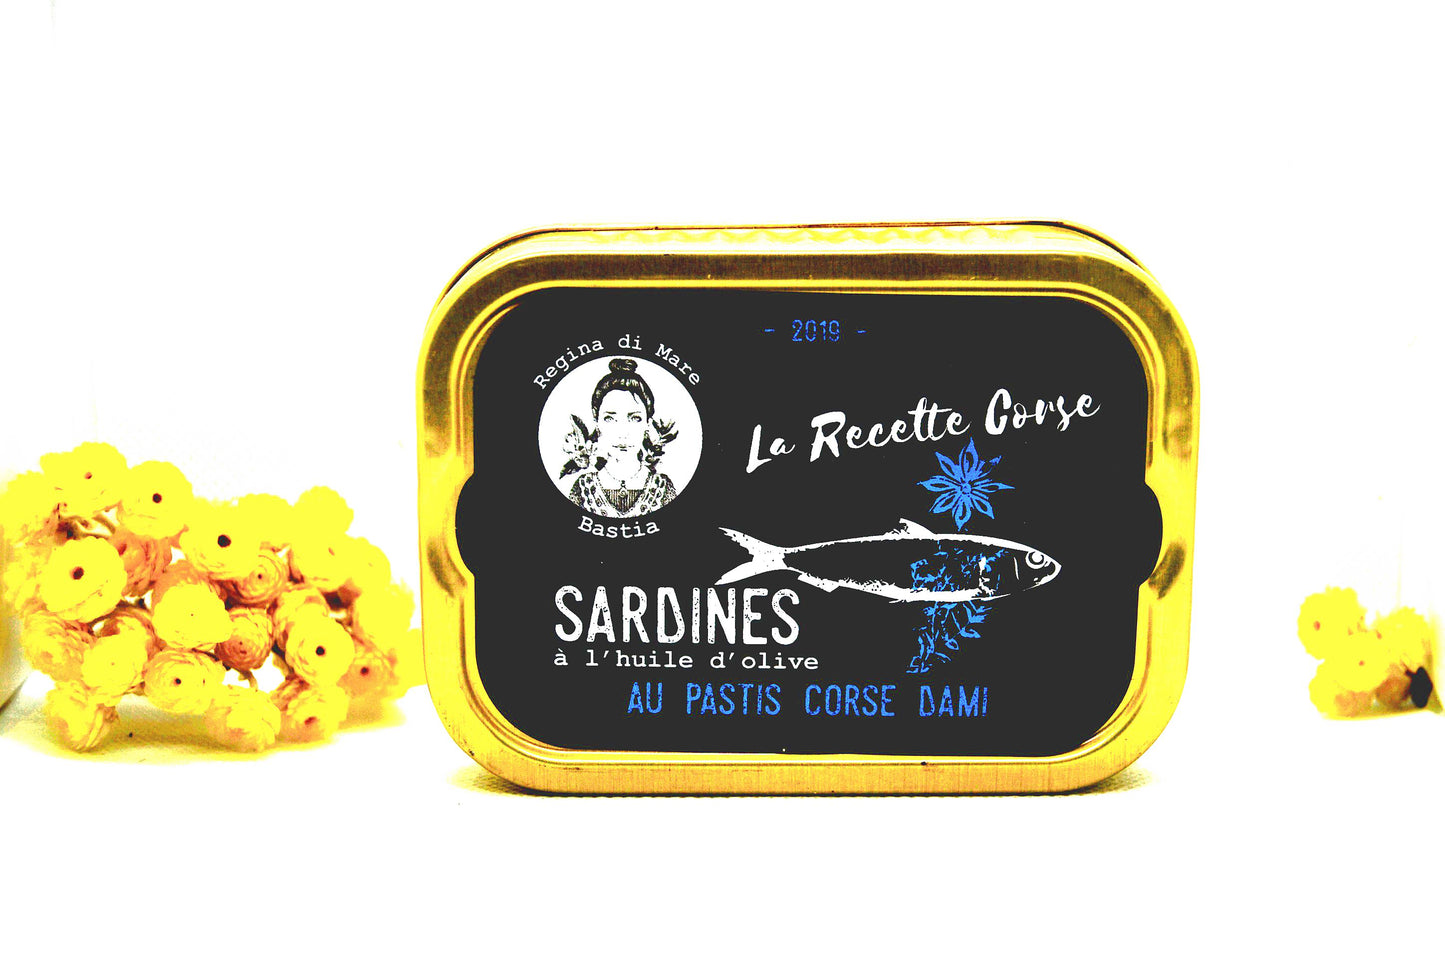 Sardines au pastis corse Dami